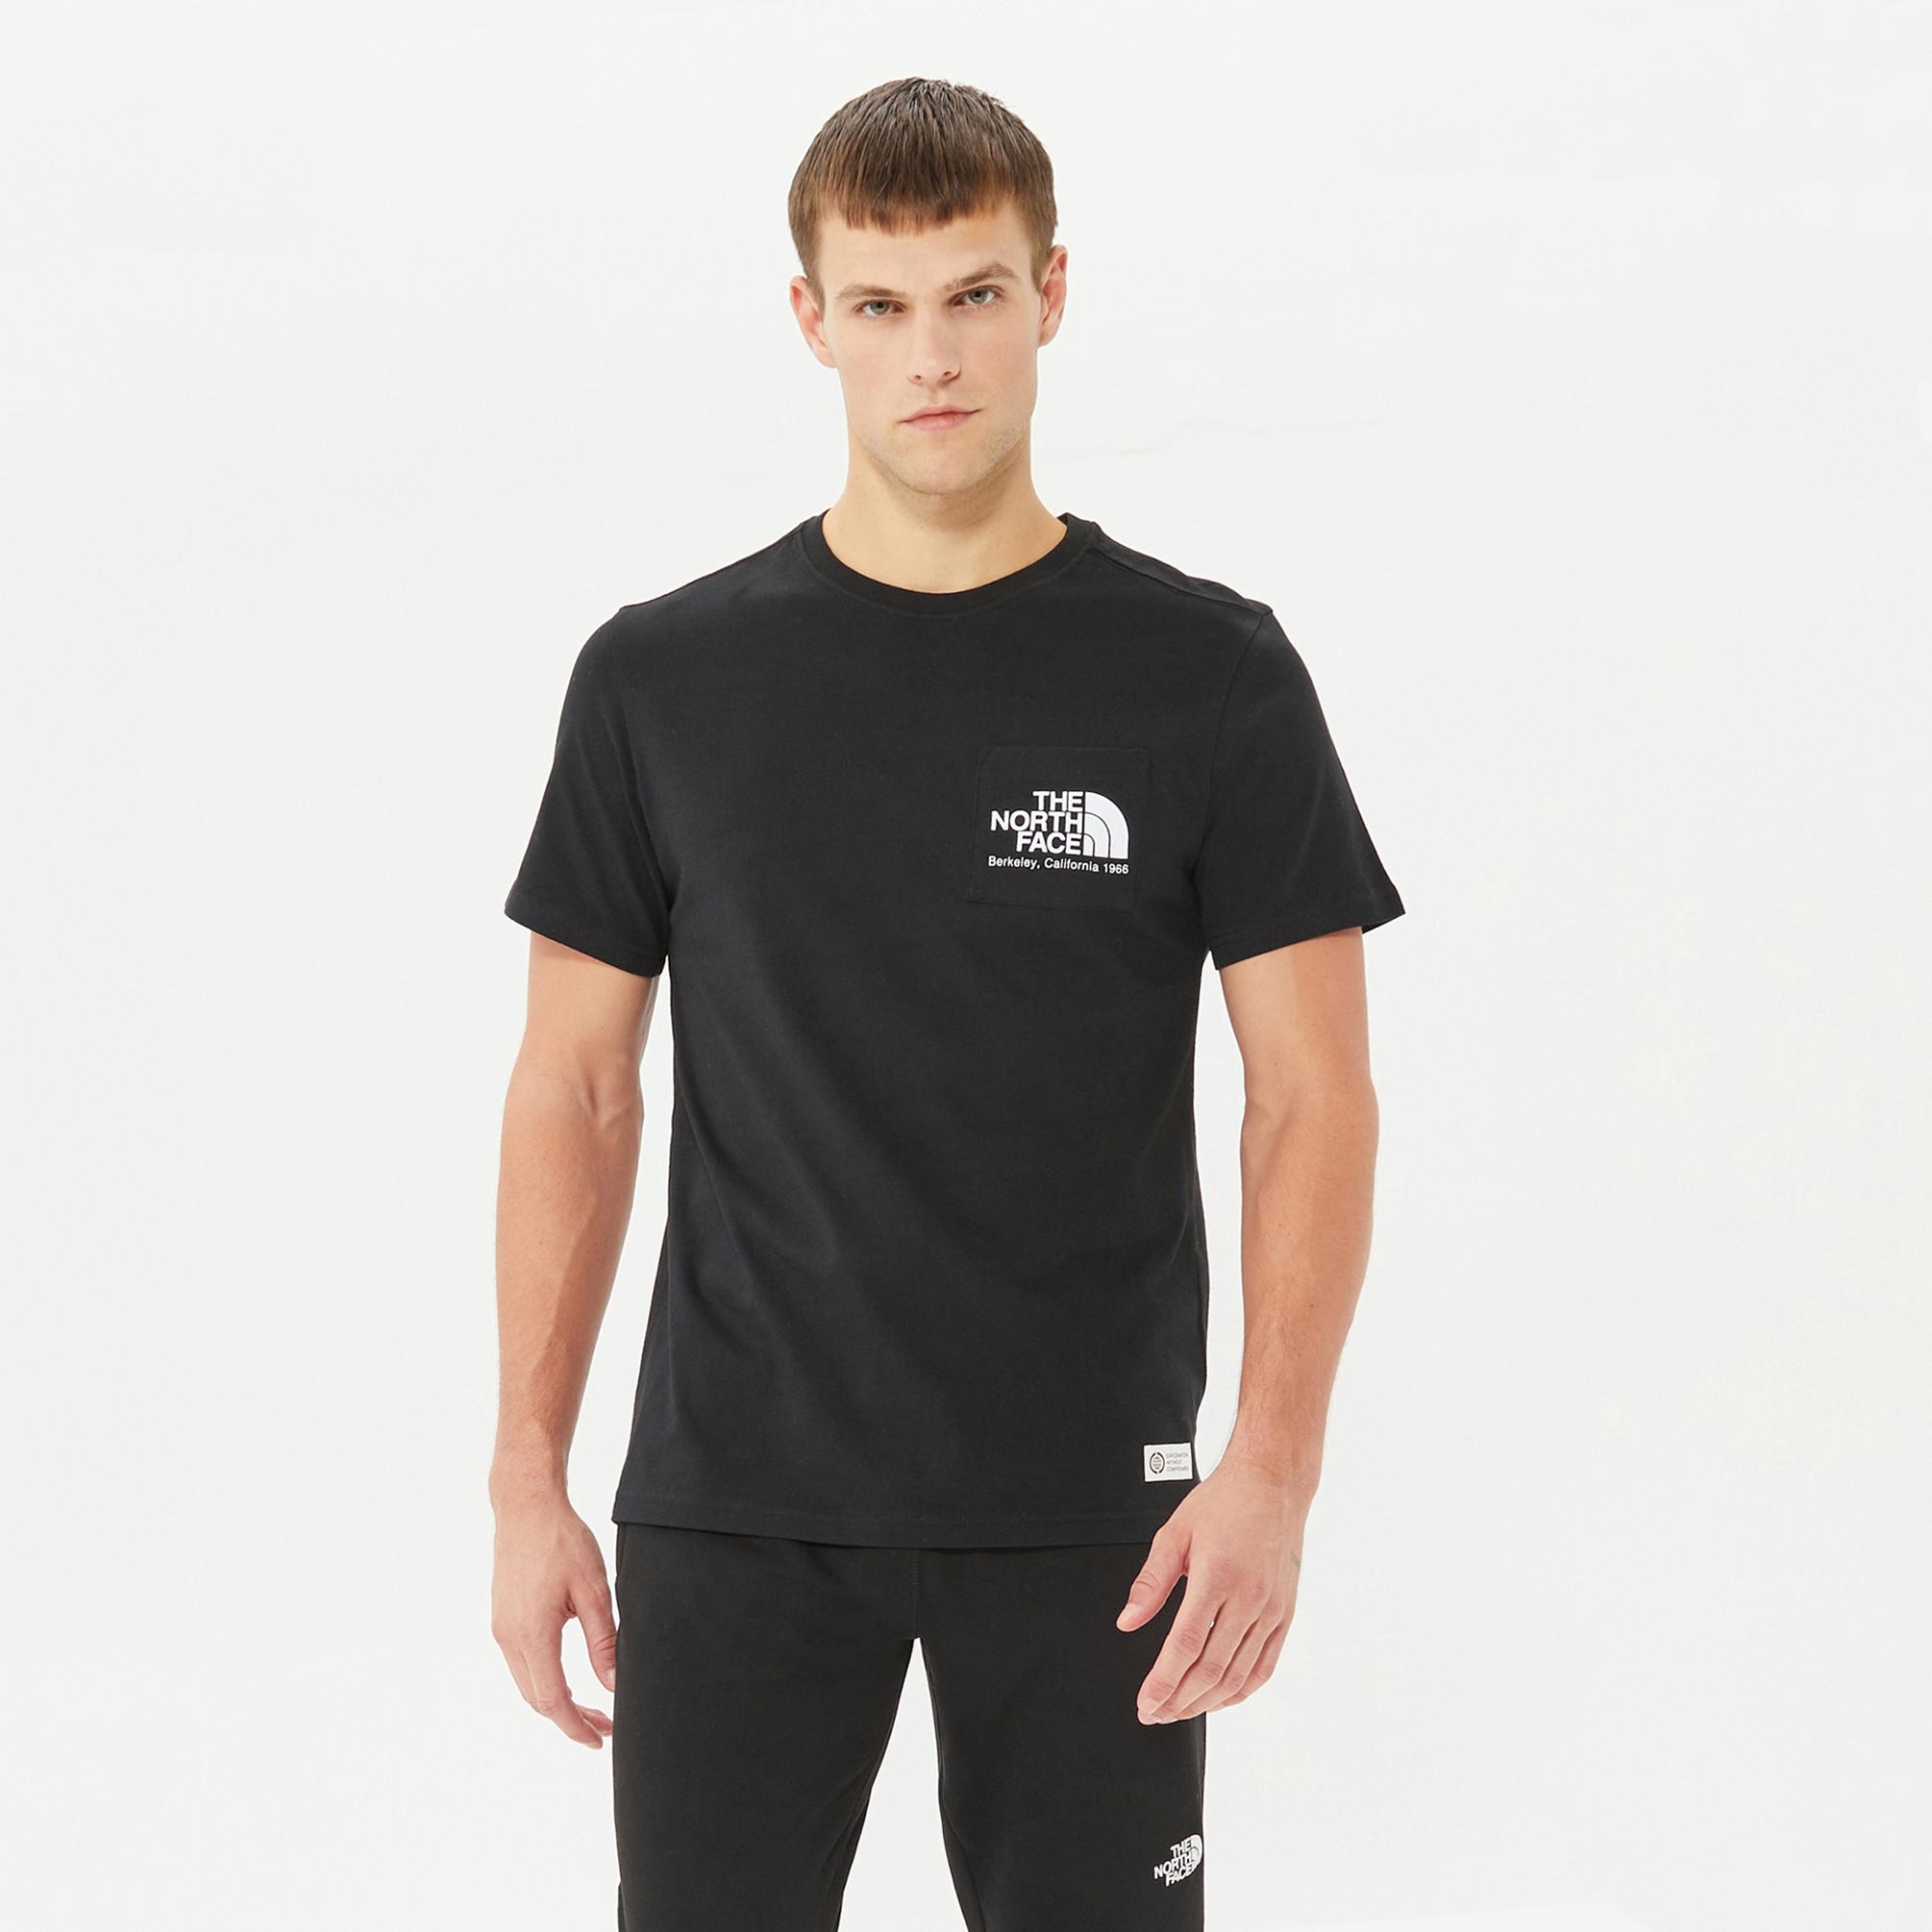  The North Face Berkeley California Erkek Siyah T-shirt